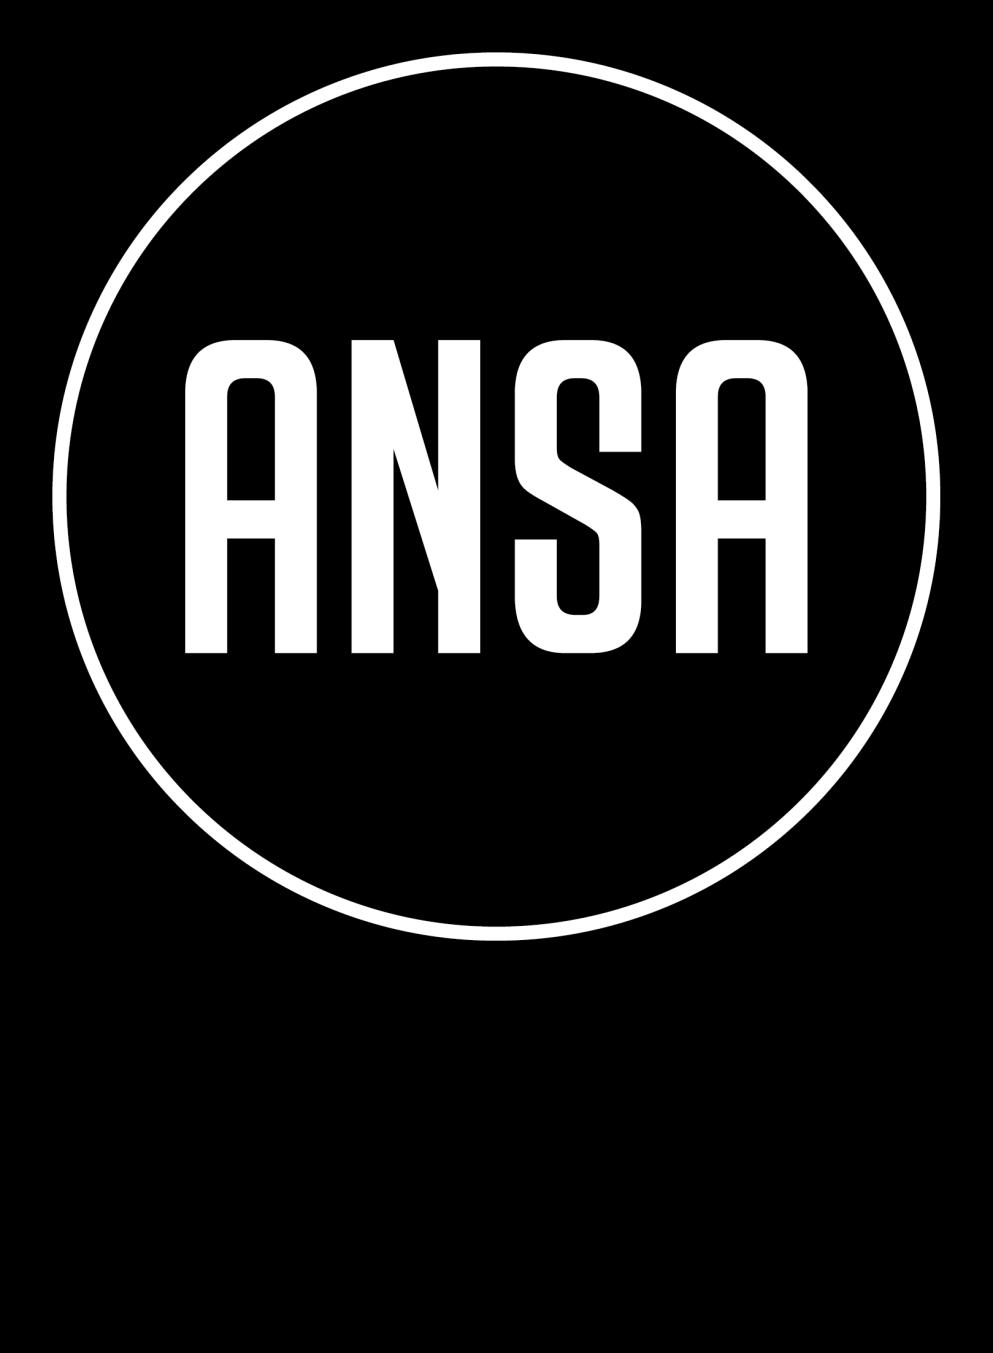 Hovedstyrets statuttendringsforslag Foreslås vedtatt på ANSAs 62.